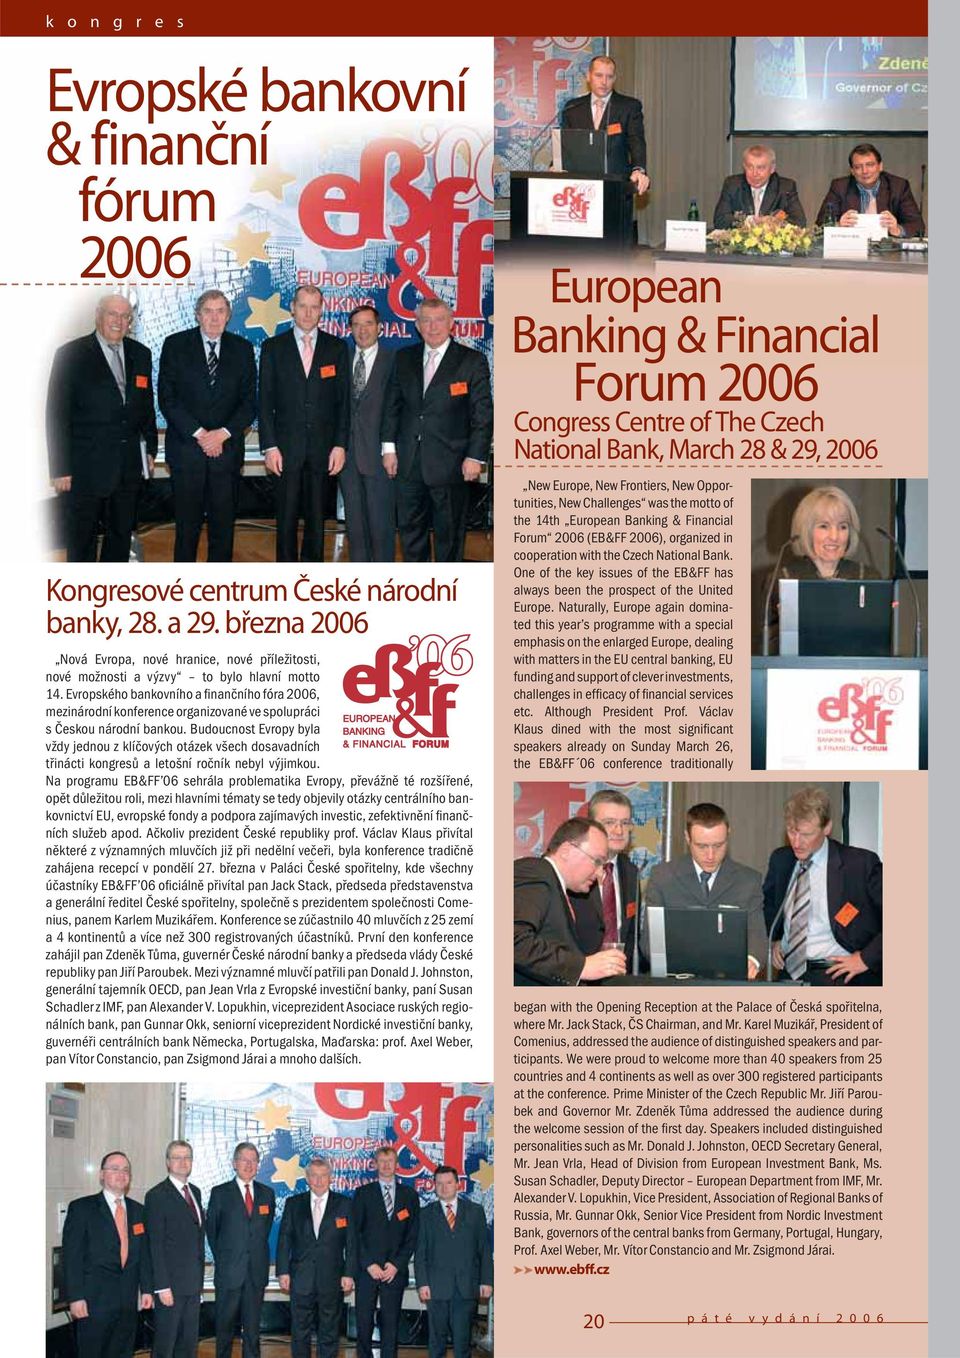 Evropského bankovního a finančního fóra 2006, mezinárodní konference organizované ve spolupráci s Českou národní bankou.